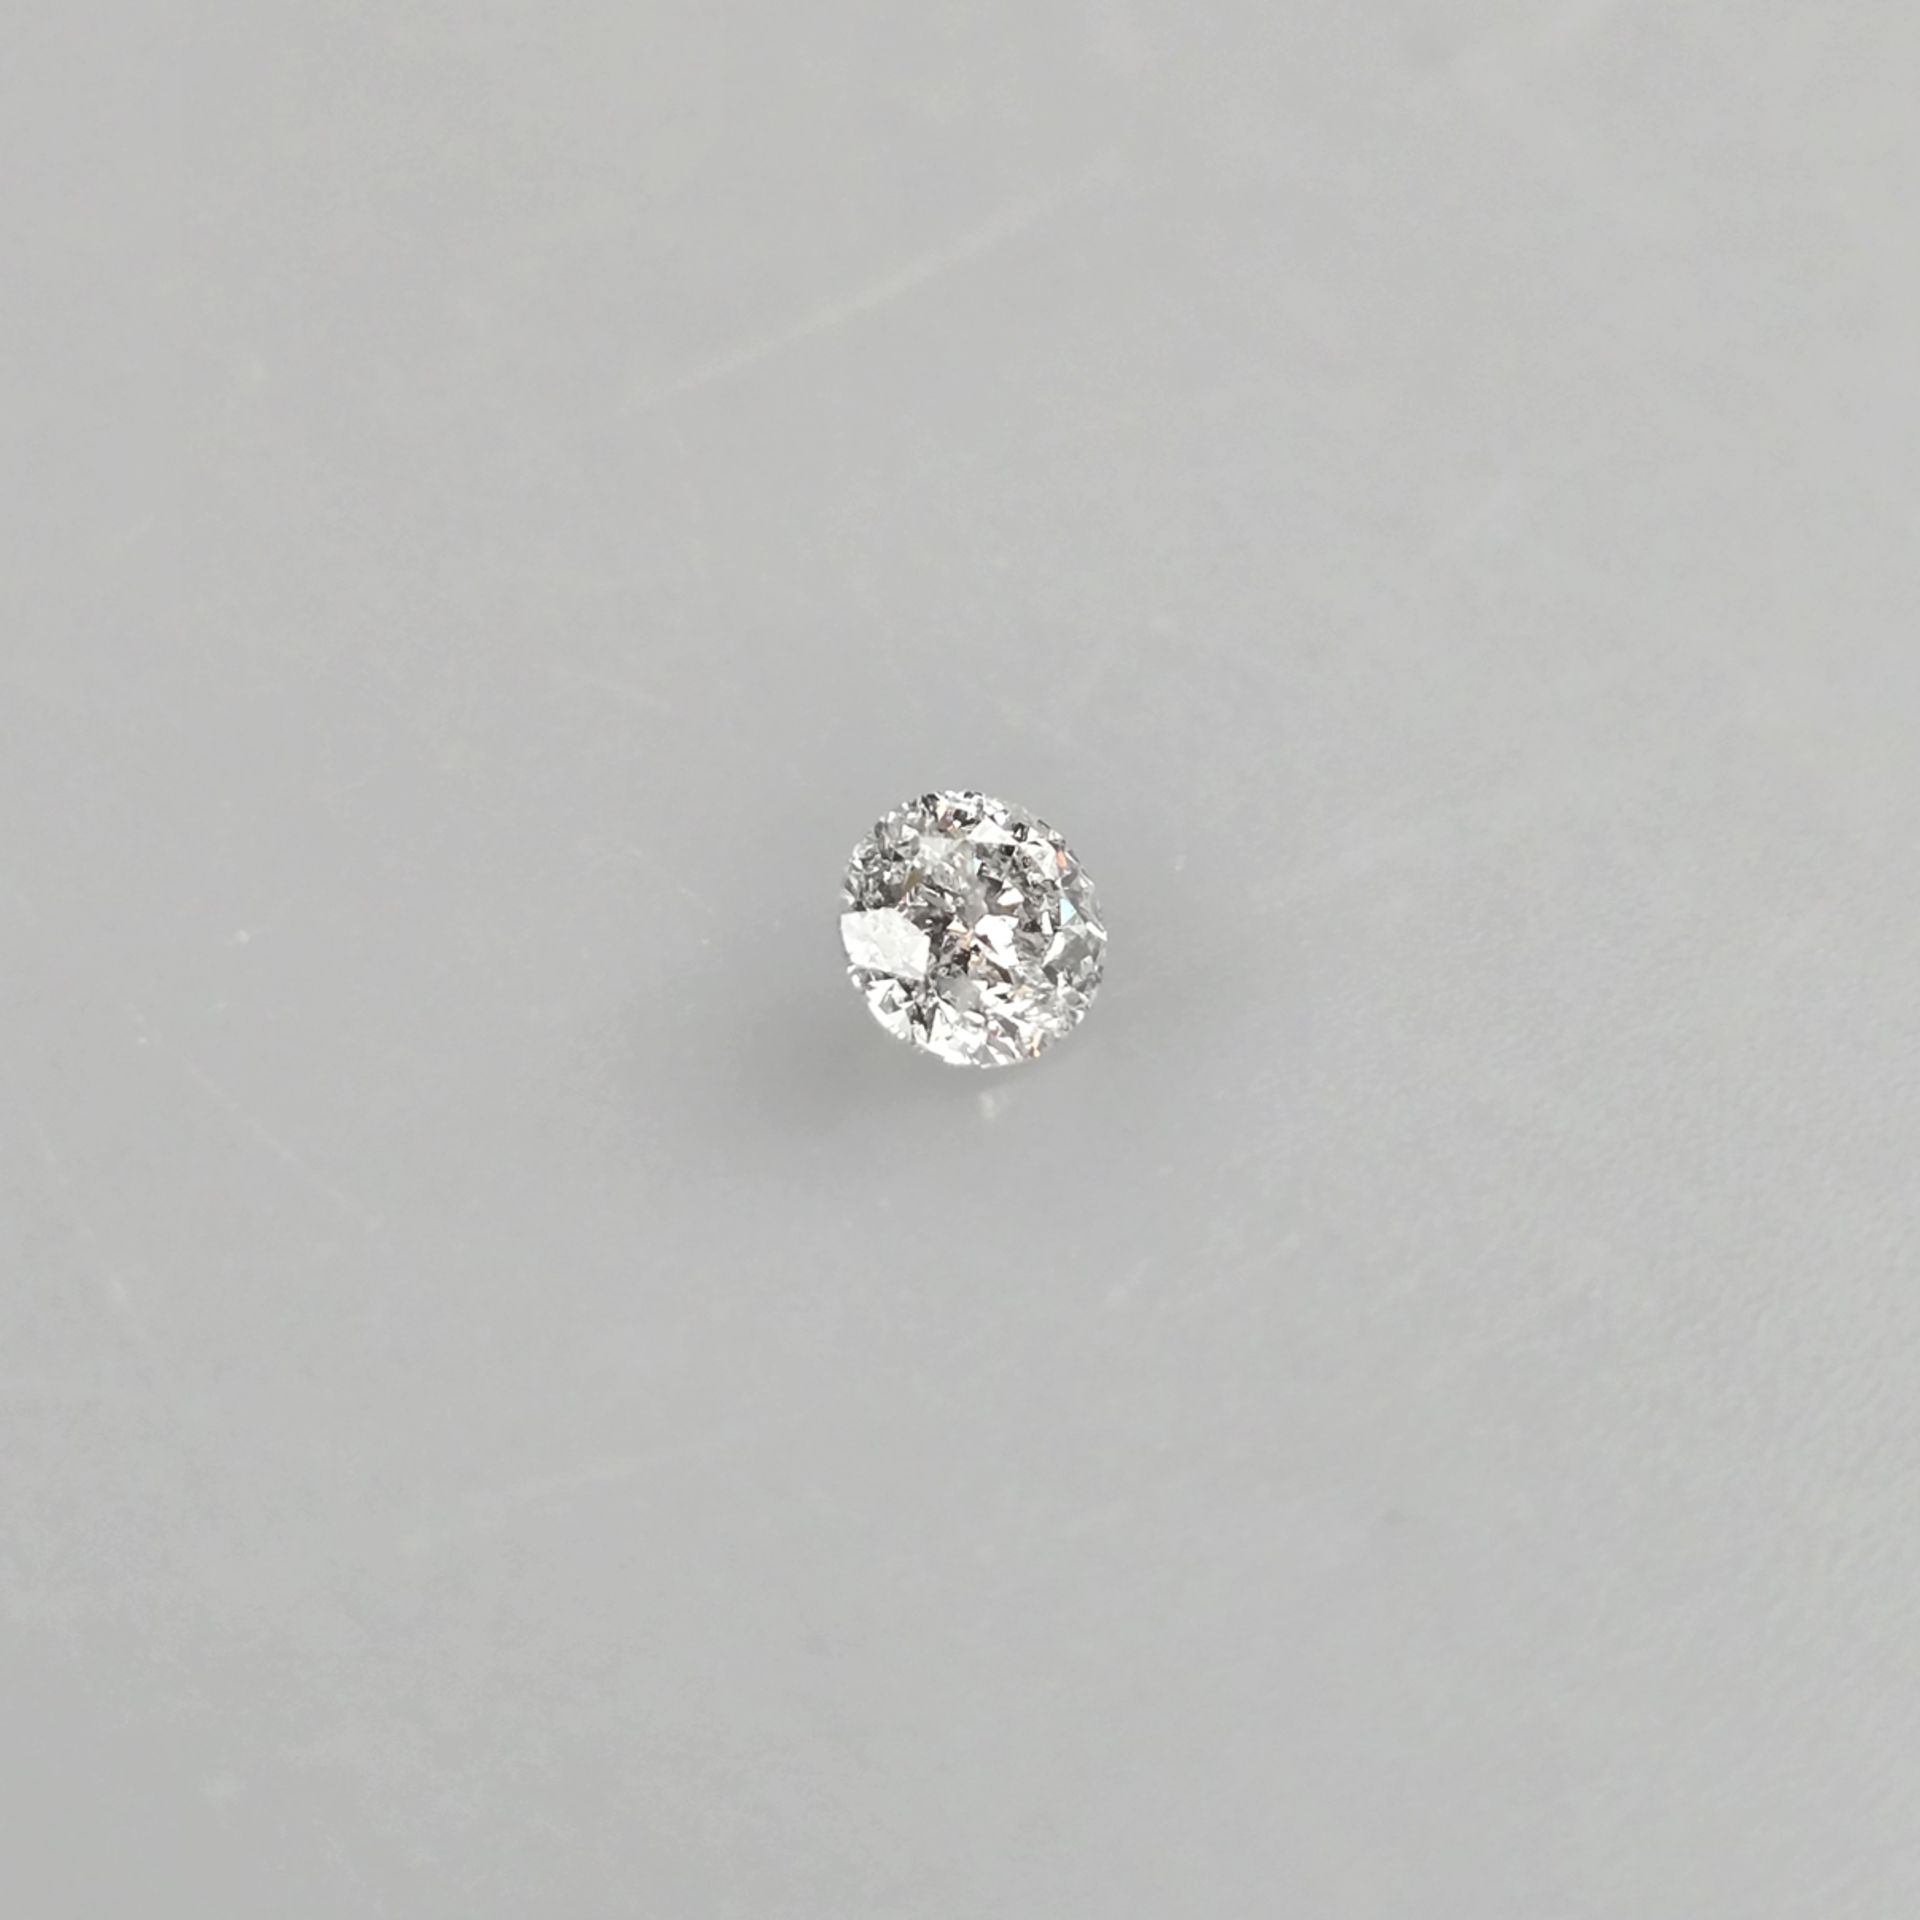 Loser natürlicher Diamant mit Lasersignatur - Gewicht 1,01 ct., sehr guter runder Brillantschliff, - Image 3 of 8